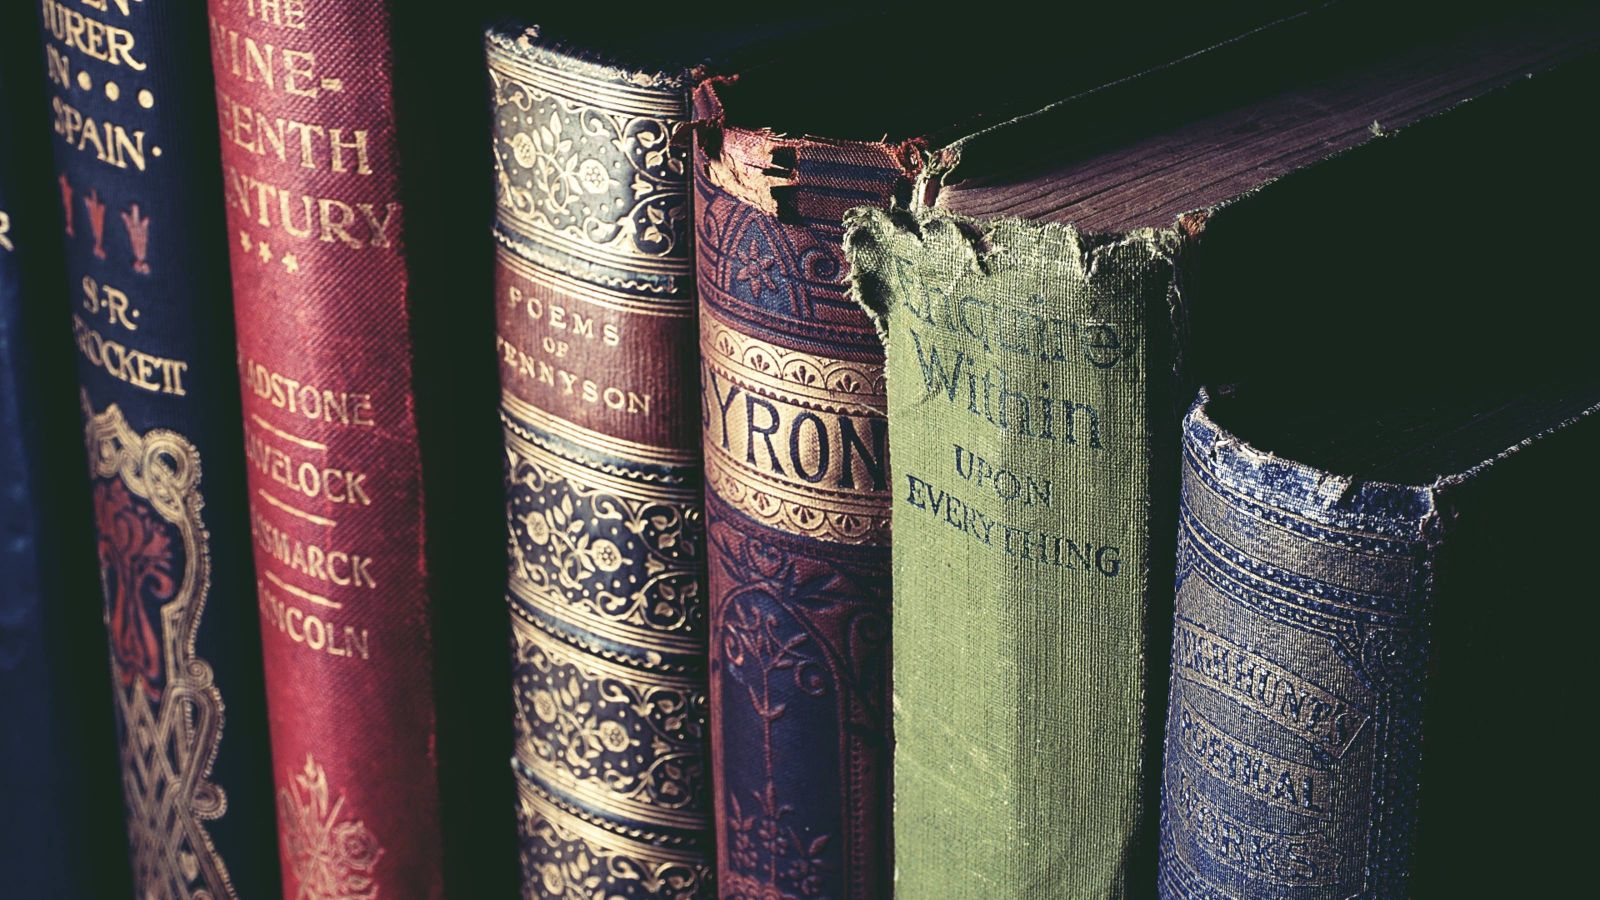 Row of six books on a shelf